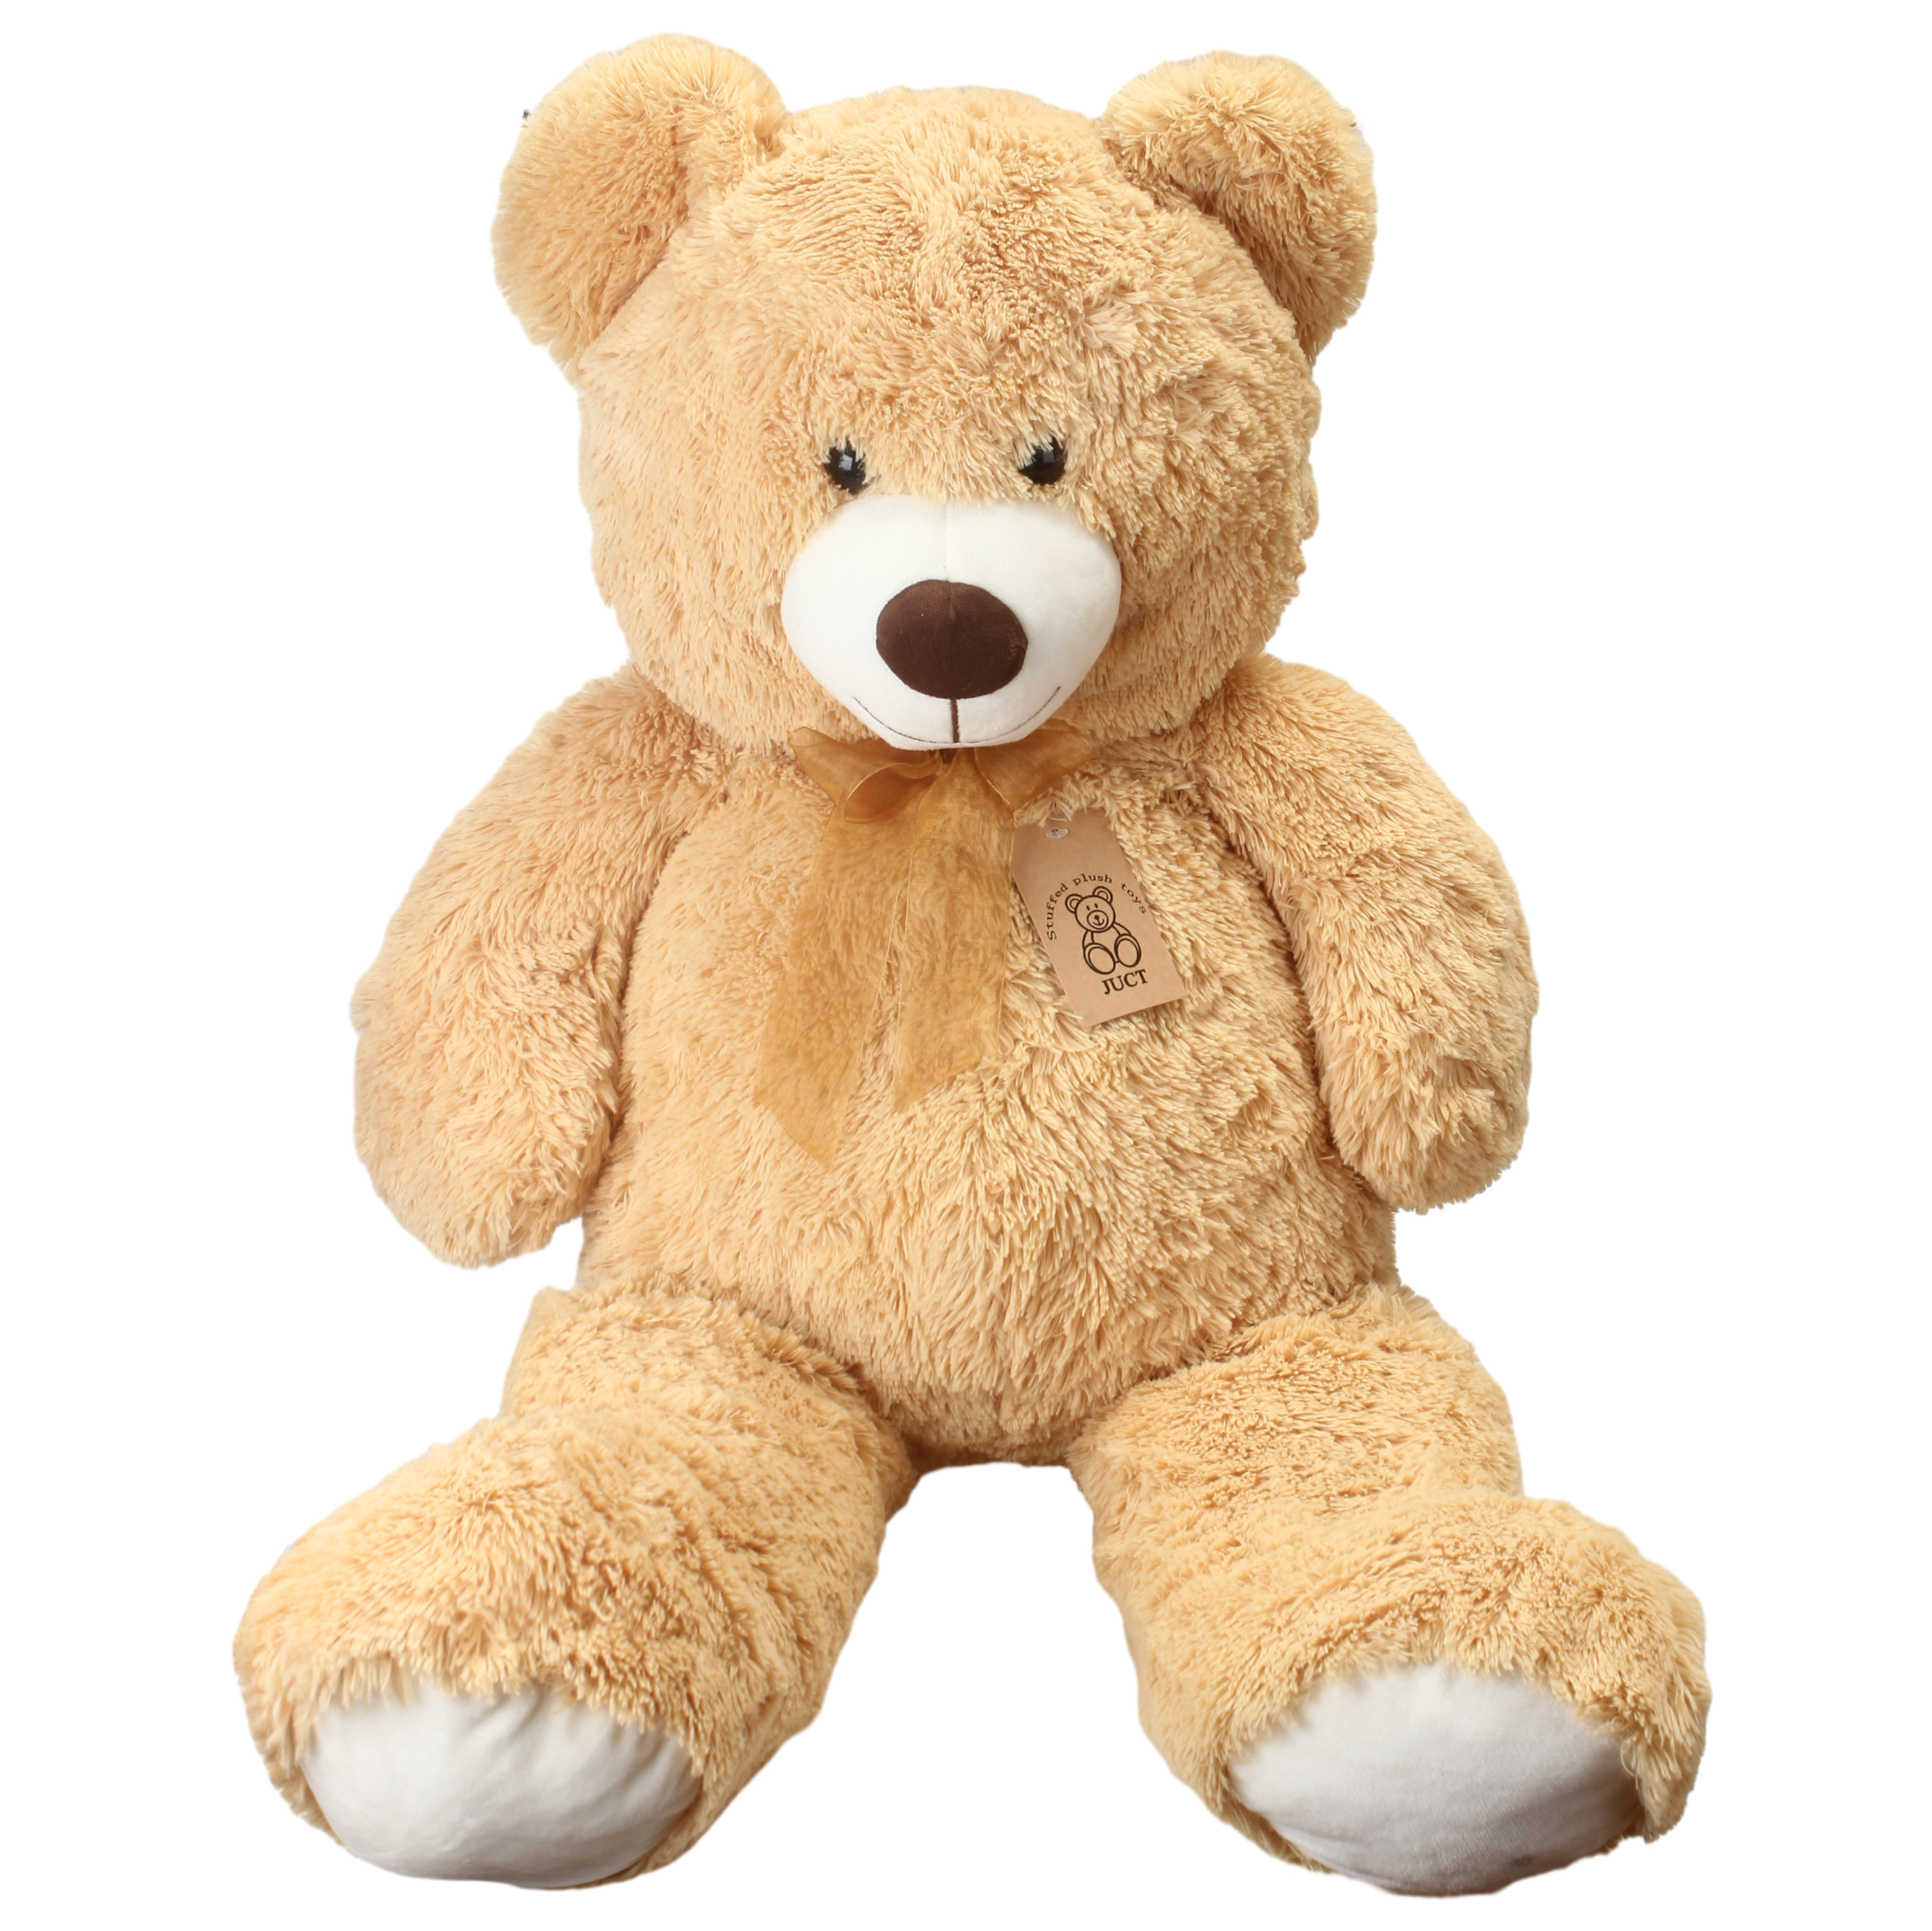 JUCT Stuffed plush toys,47inch Soft Stuffed Animals Cute Plush Toy for Kid ,Girlfriend, Women